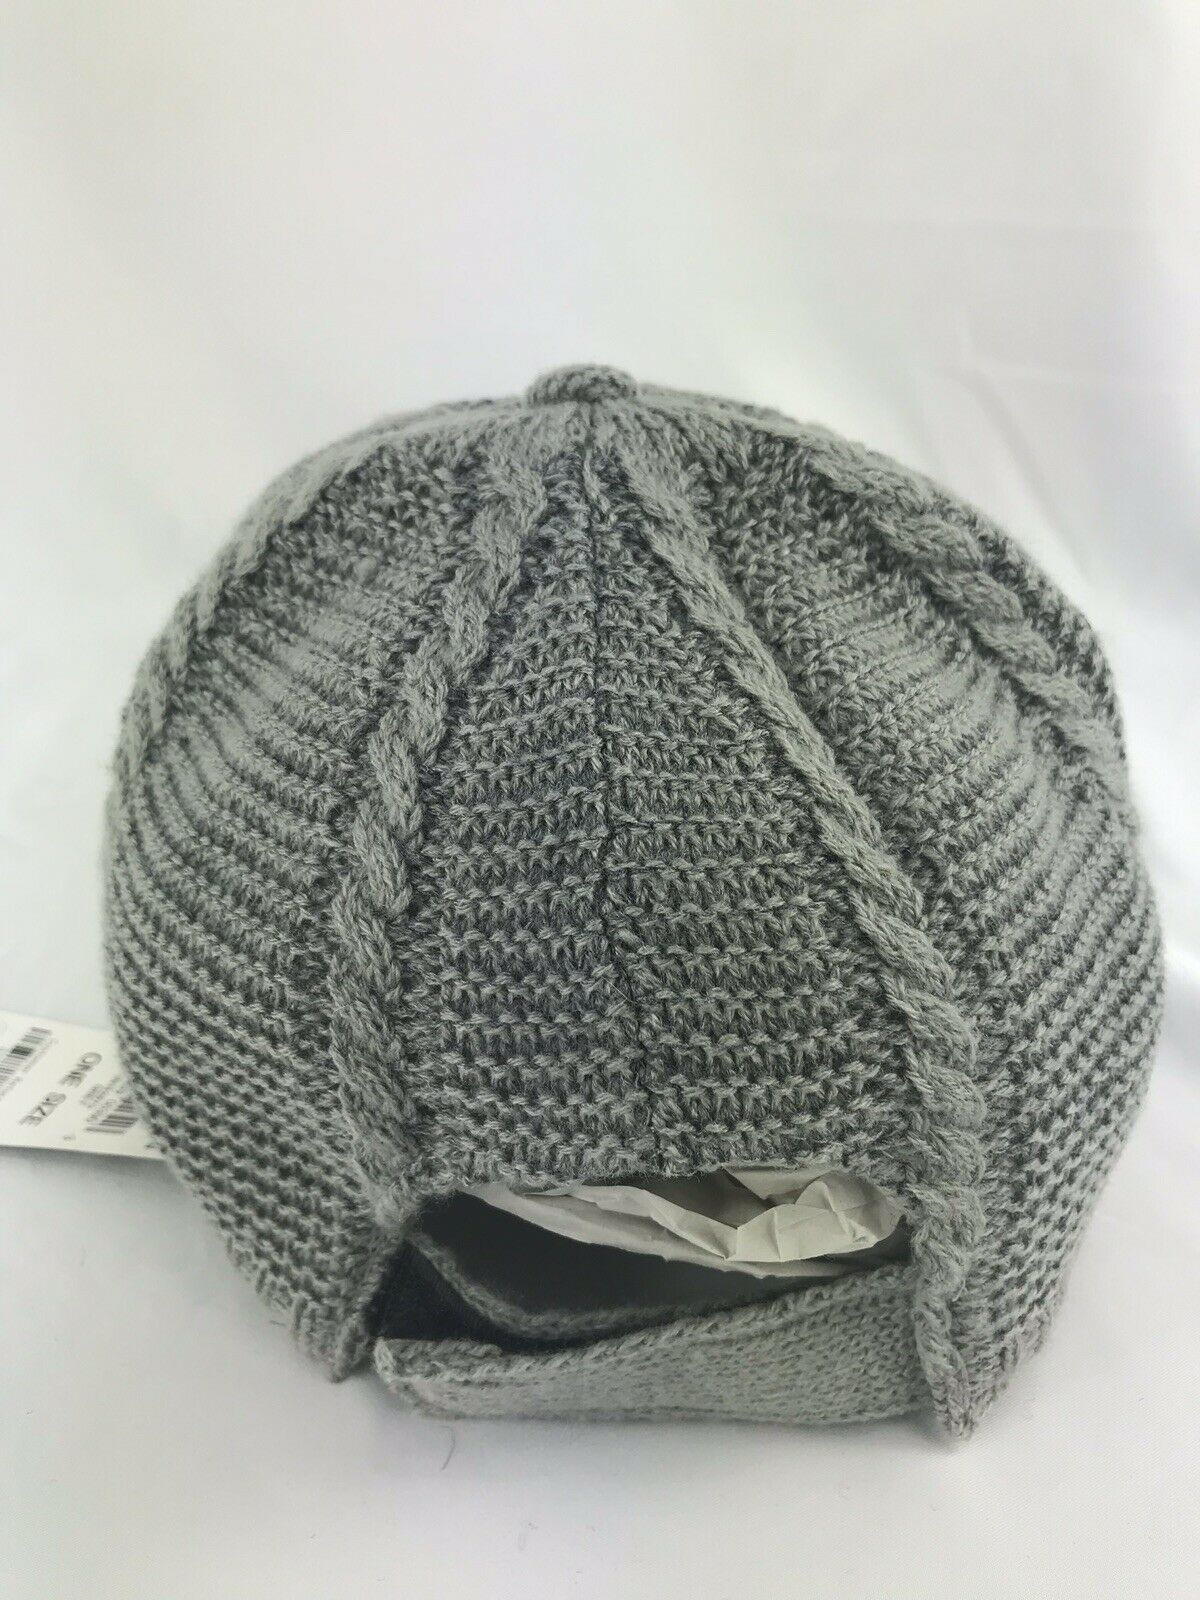 INC Knit Baseball Cap Warm ($28.50)